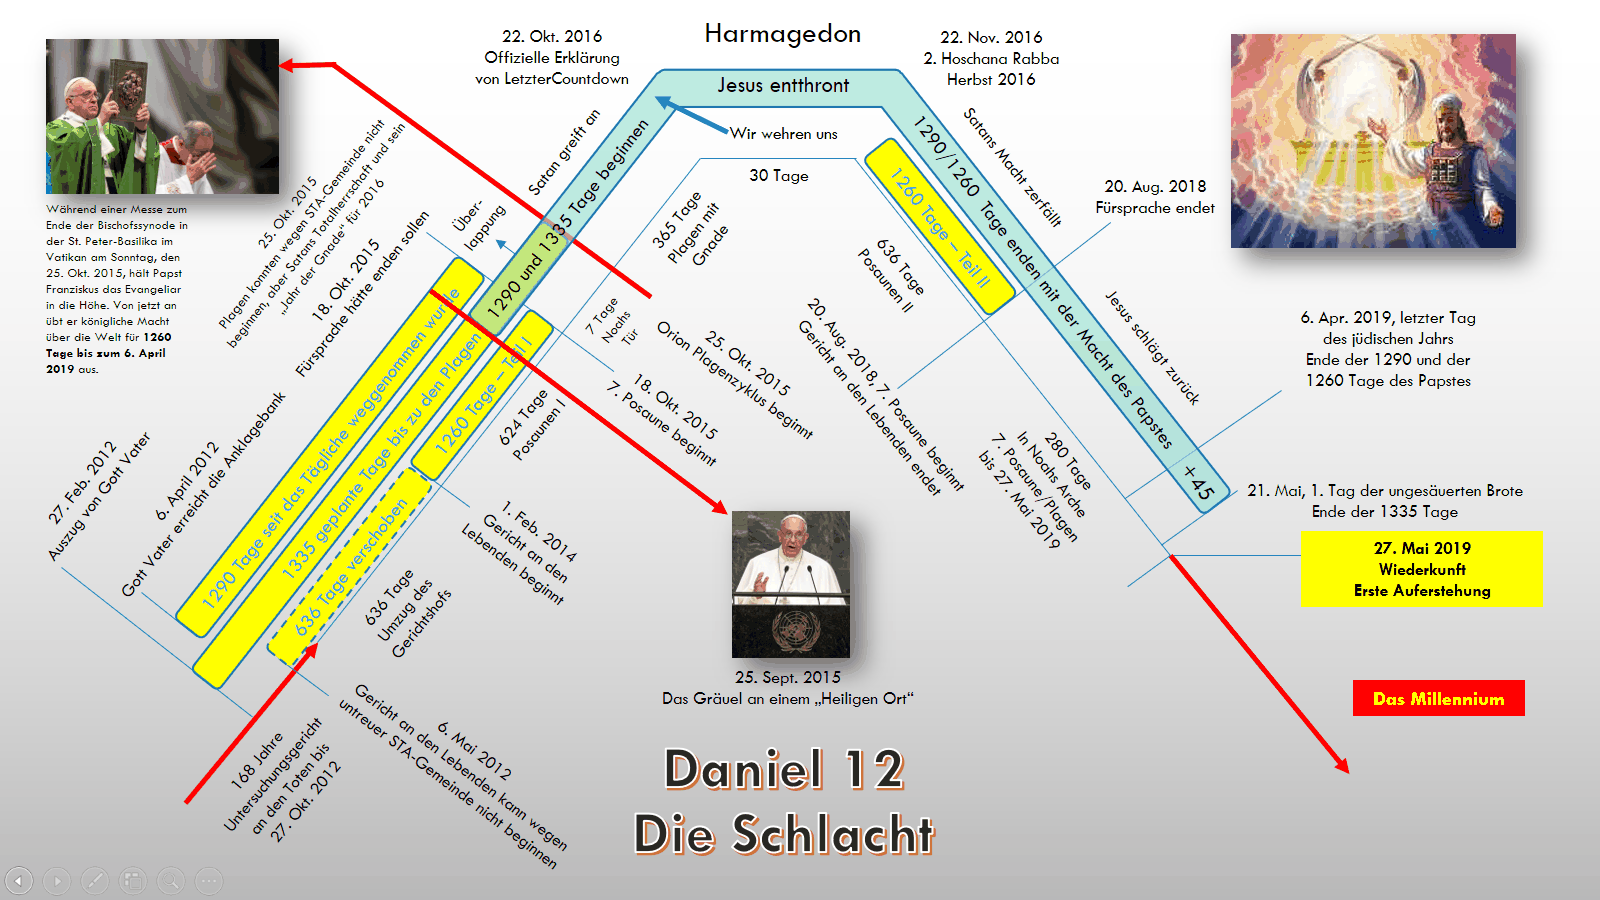 Daniel 12 - Die Schlacht